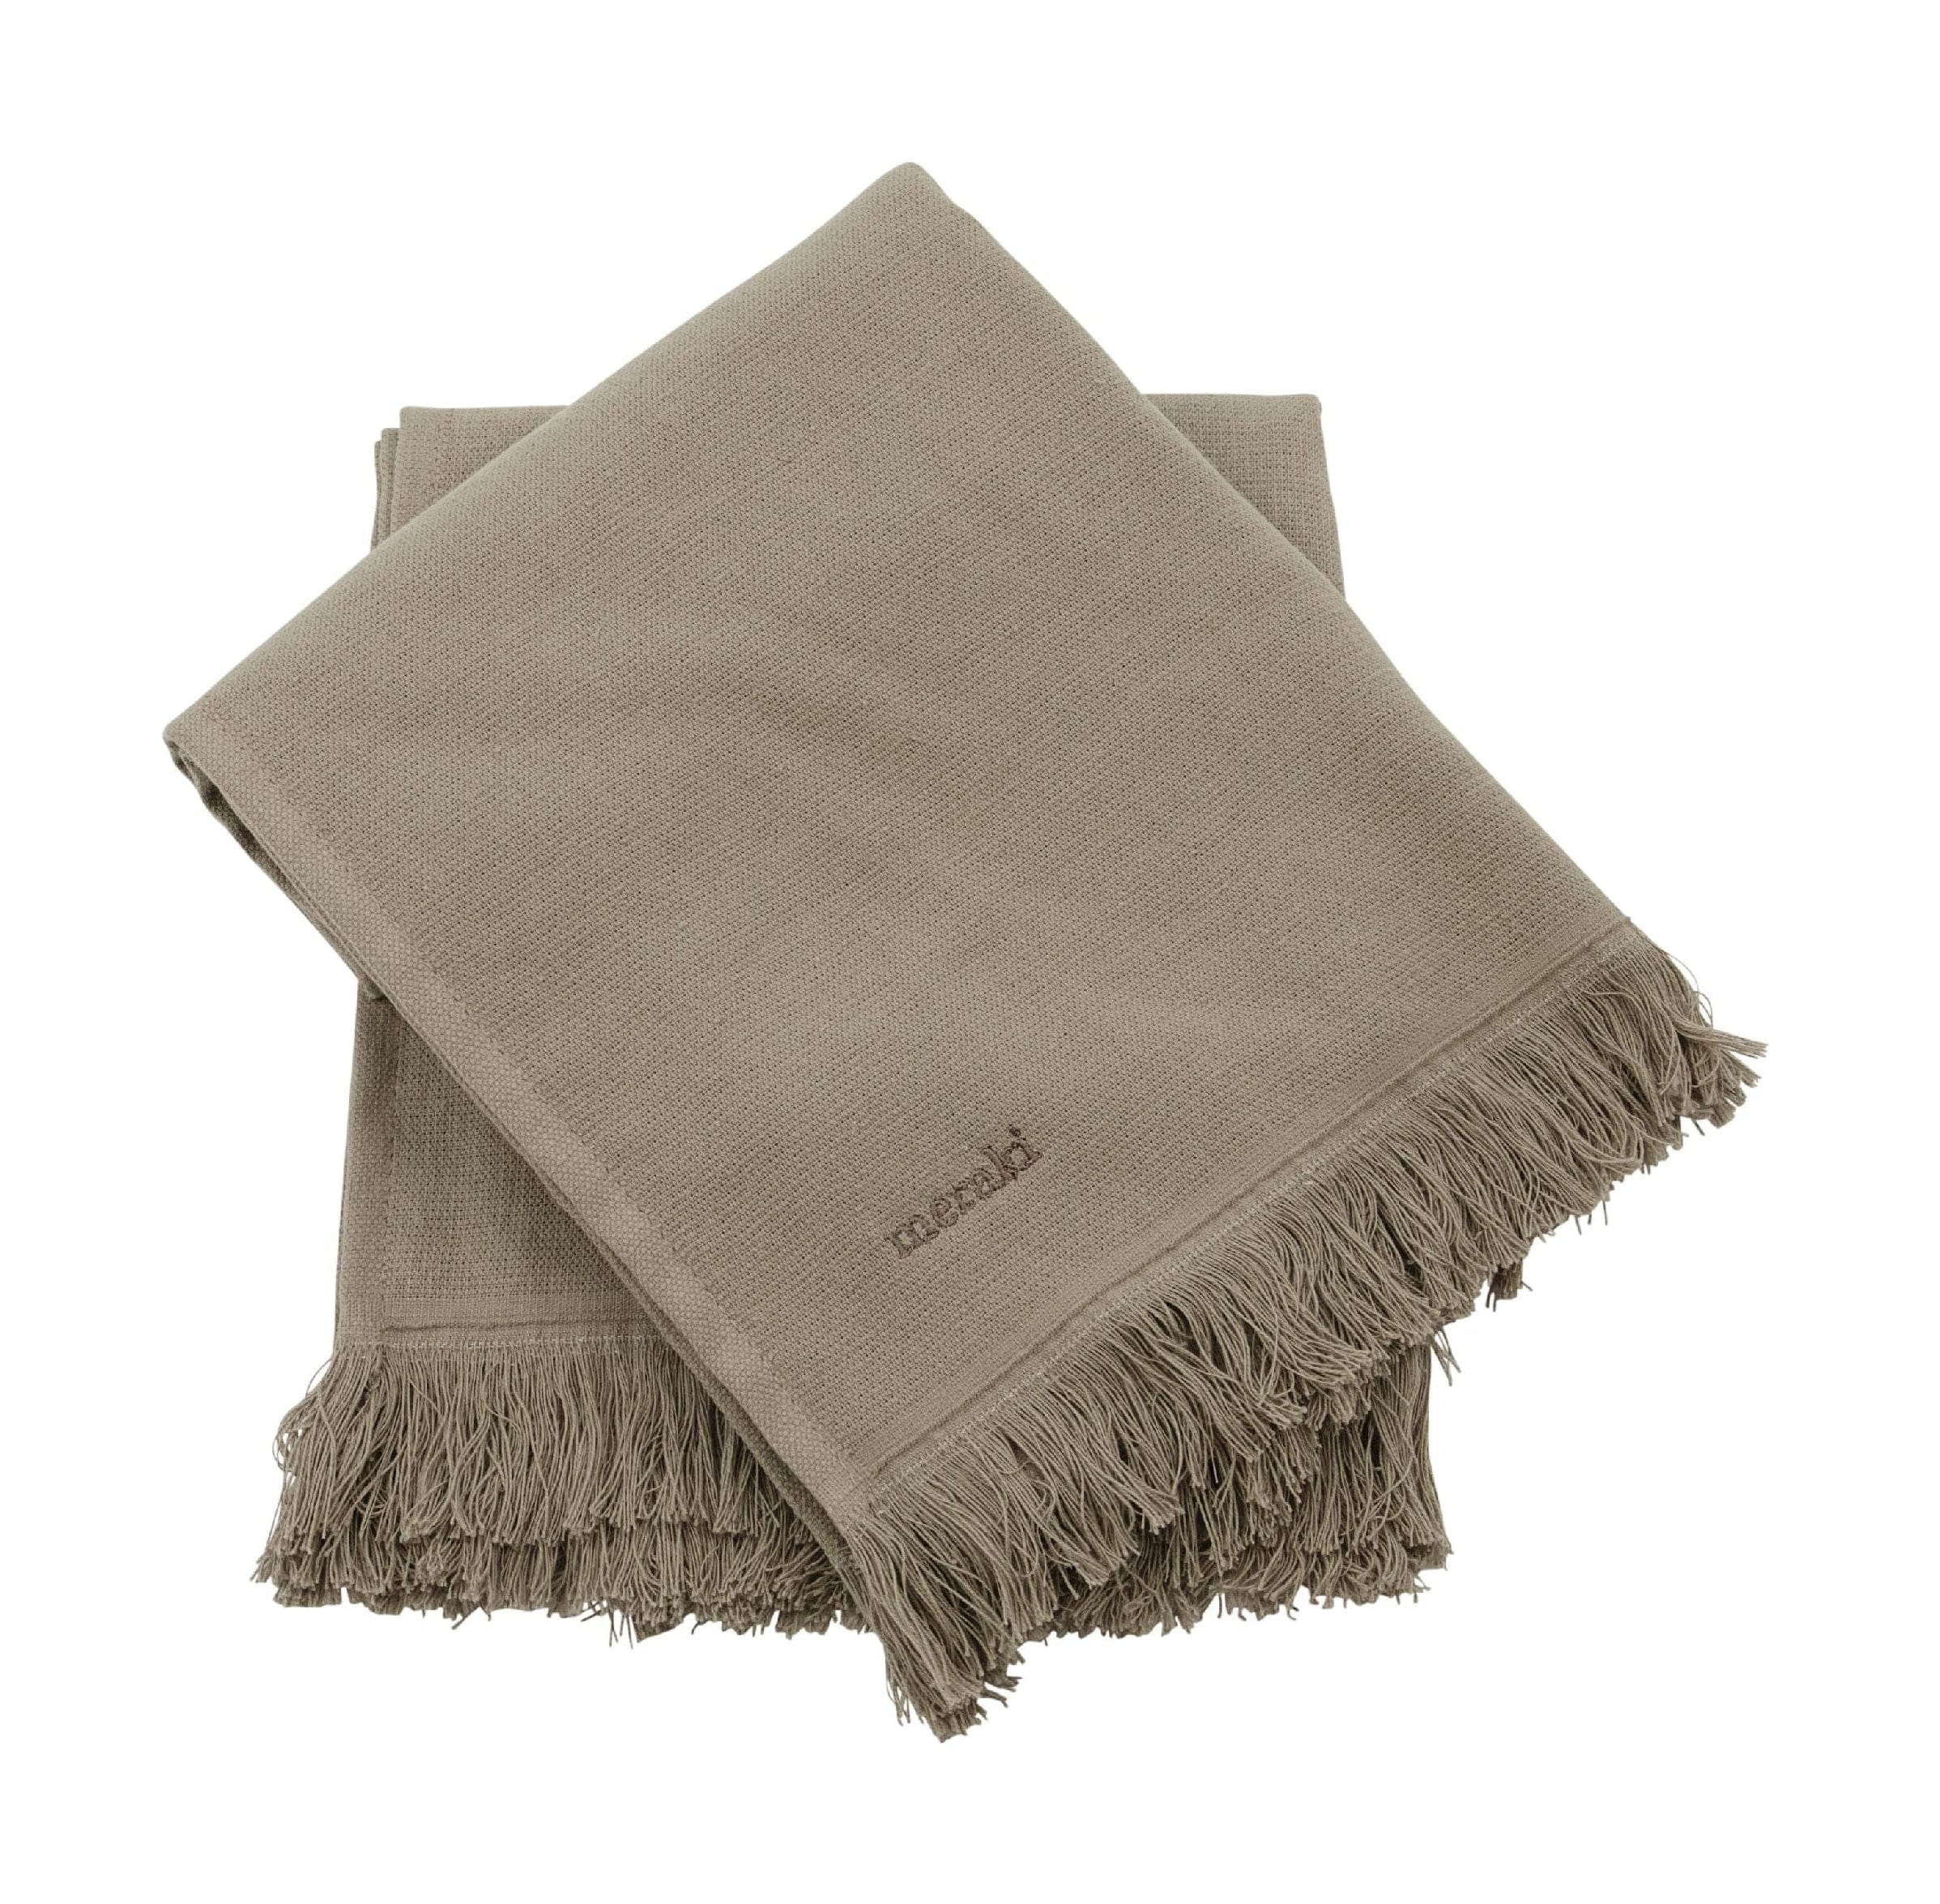 Meraki Lunaria håndklæde sæt på 2, varm grå